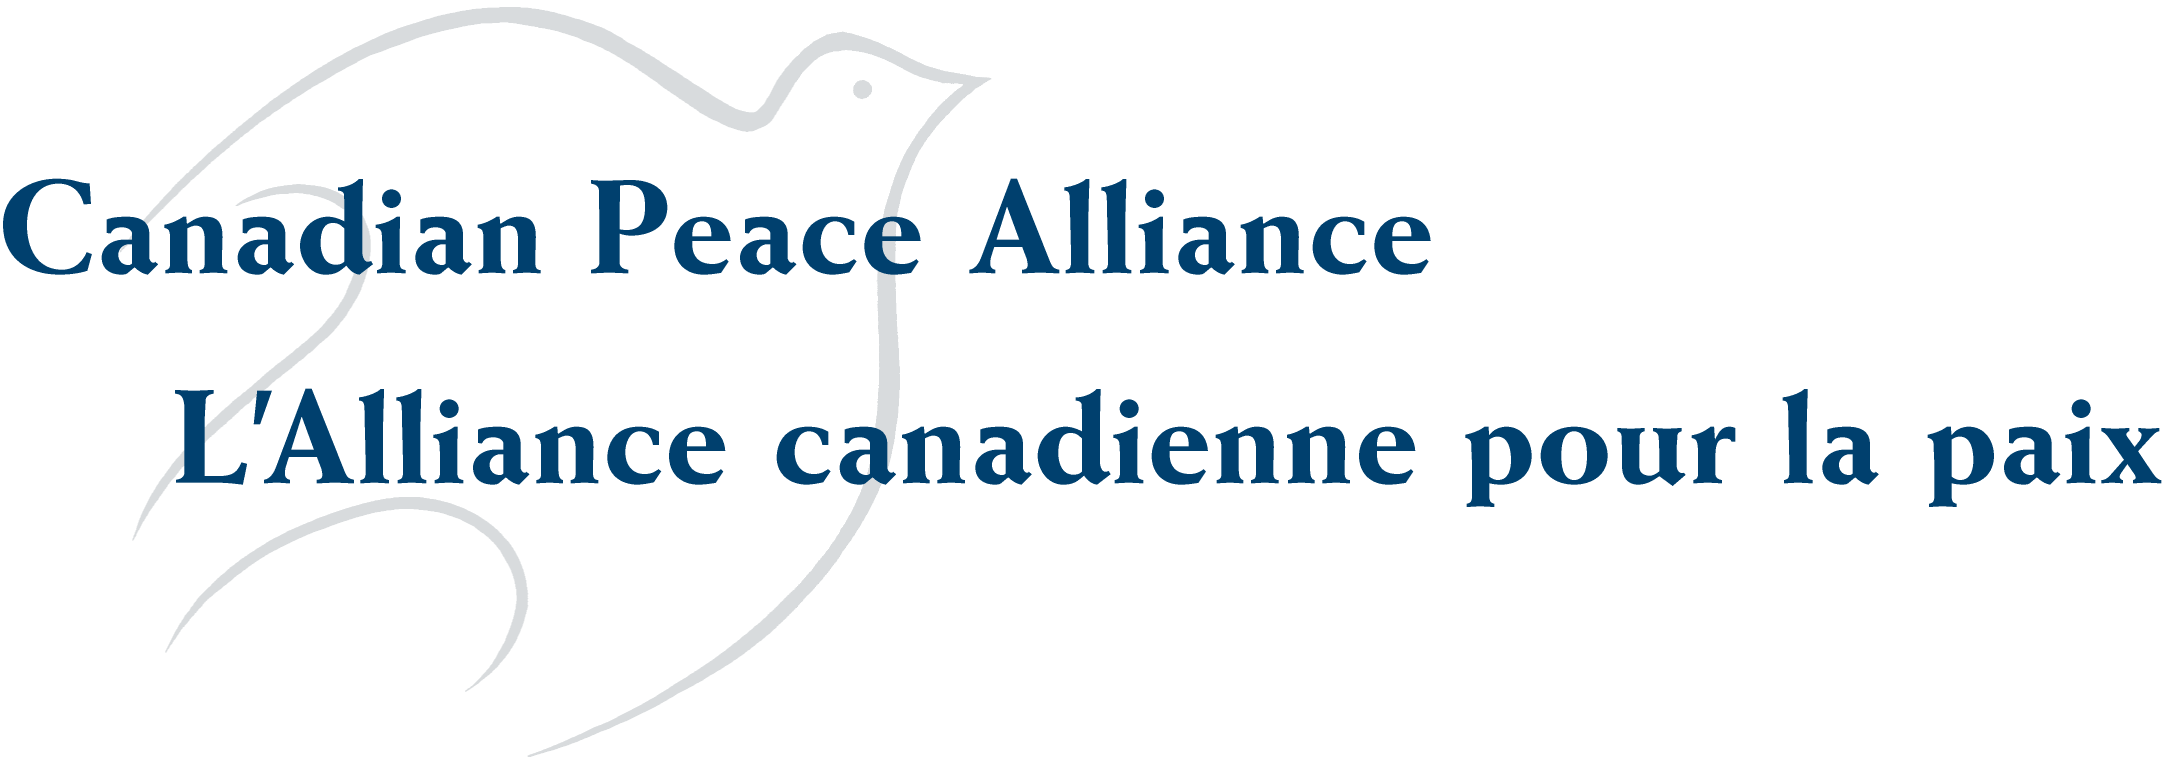 Canadian Peace Alliance